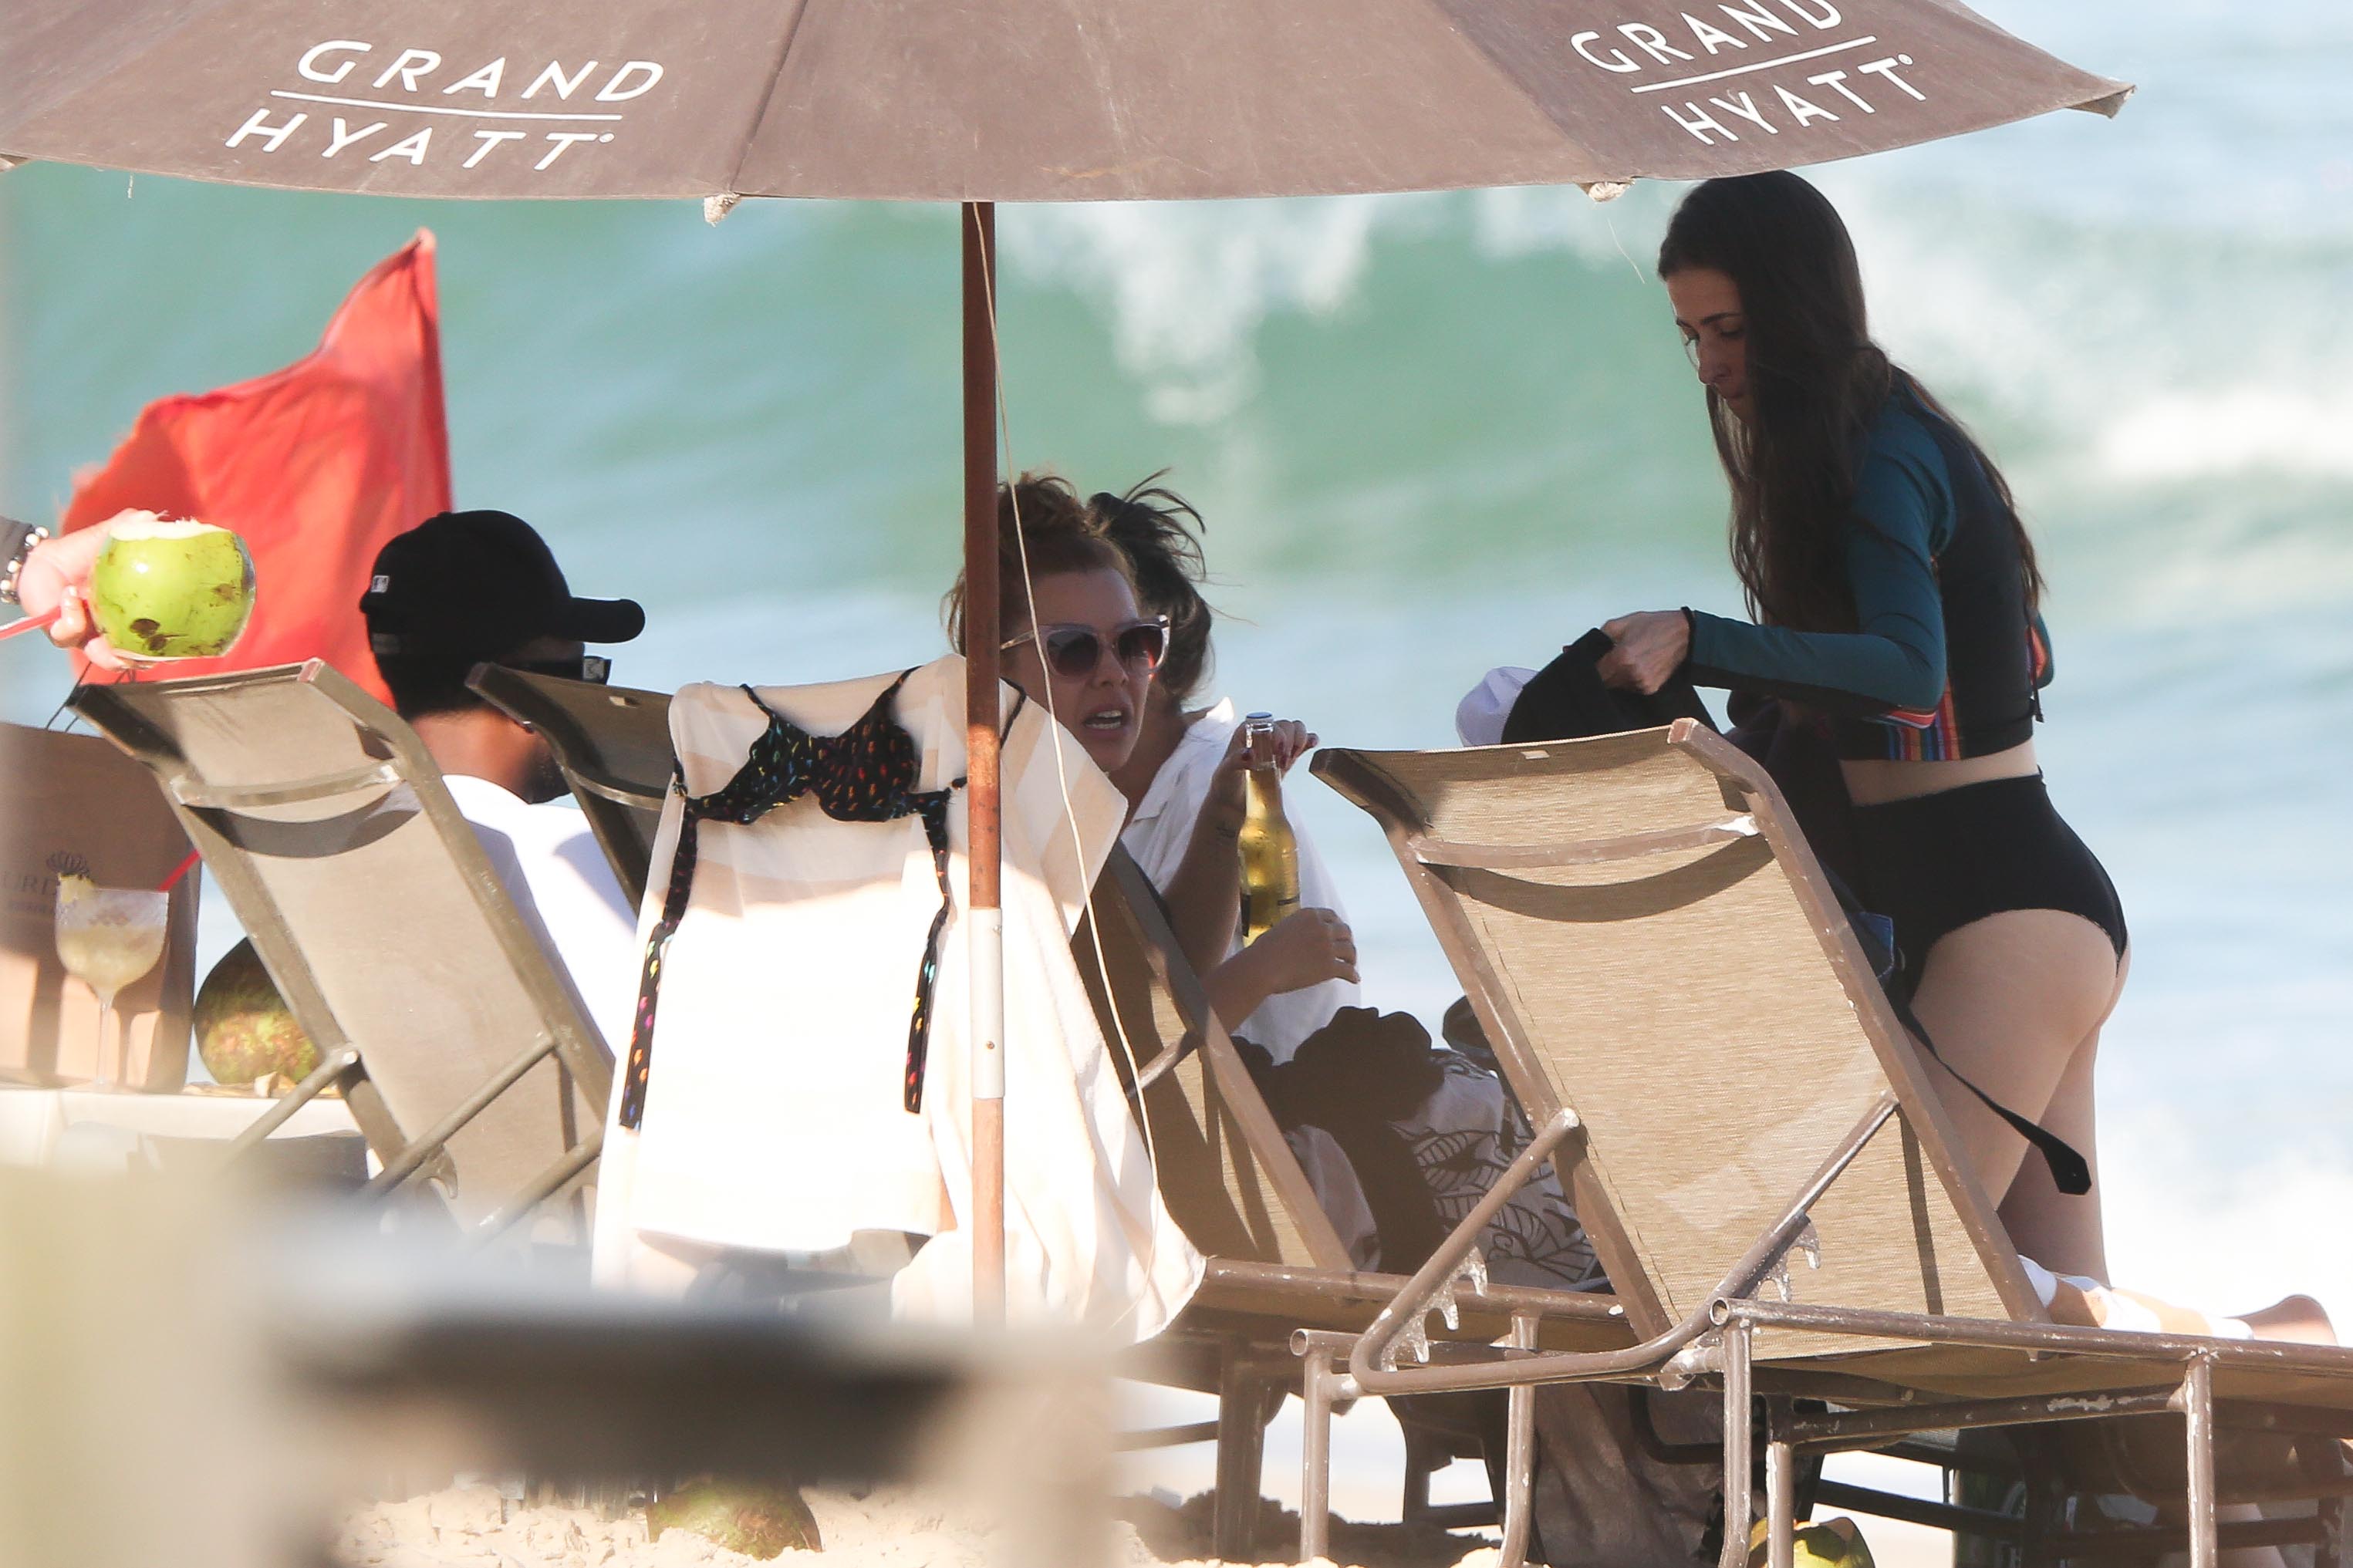 Thiaguinho e Fernanda Souza curtem dia com as namoradas na praia